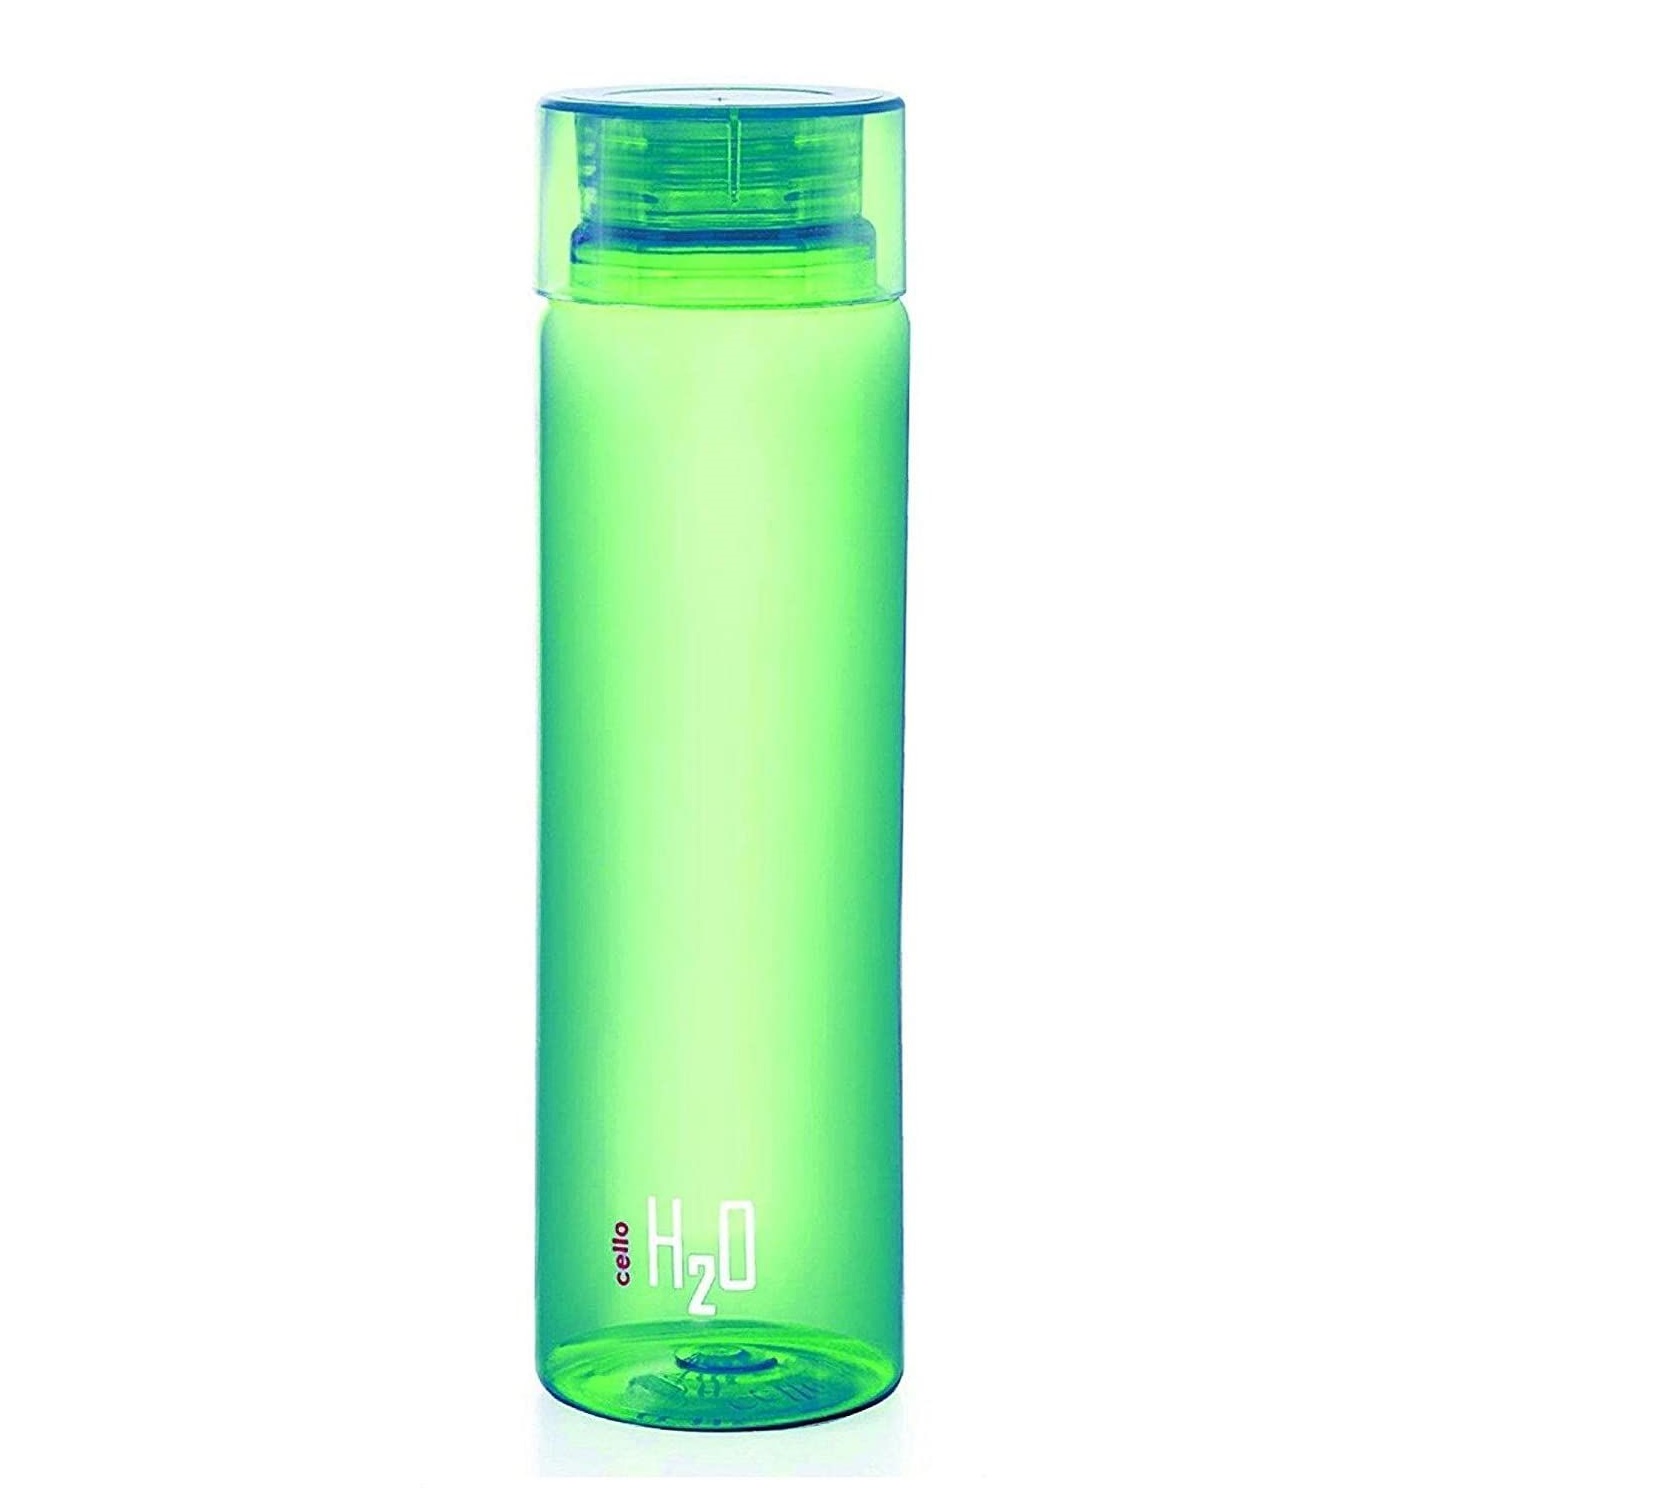 Cello H2O Premium Plastic Water Bottle (Green, 1L)